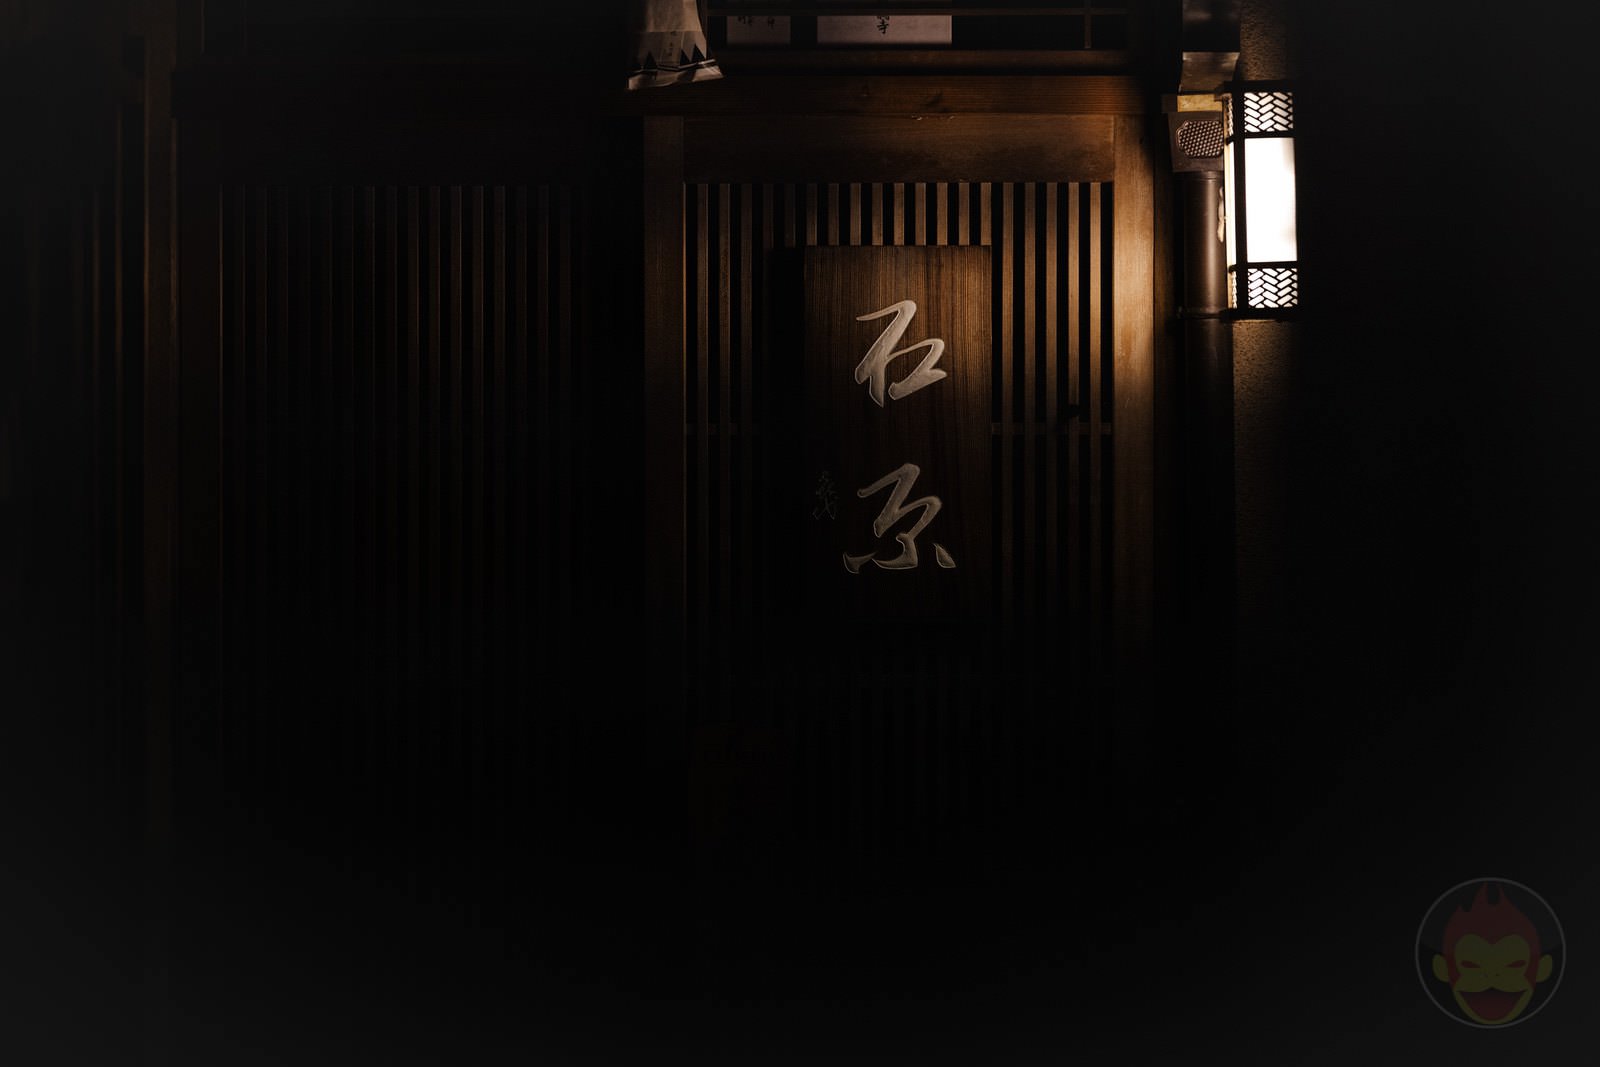 Kyoto Street Snap at midnight 08